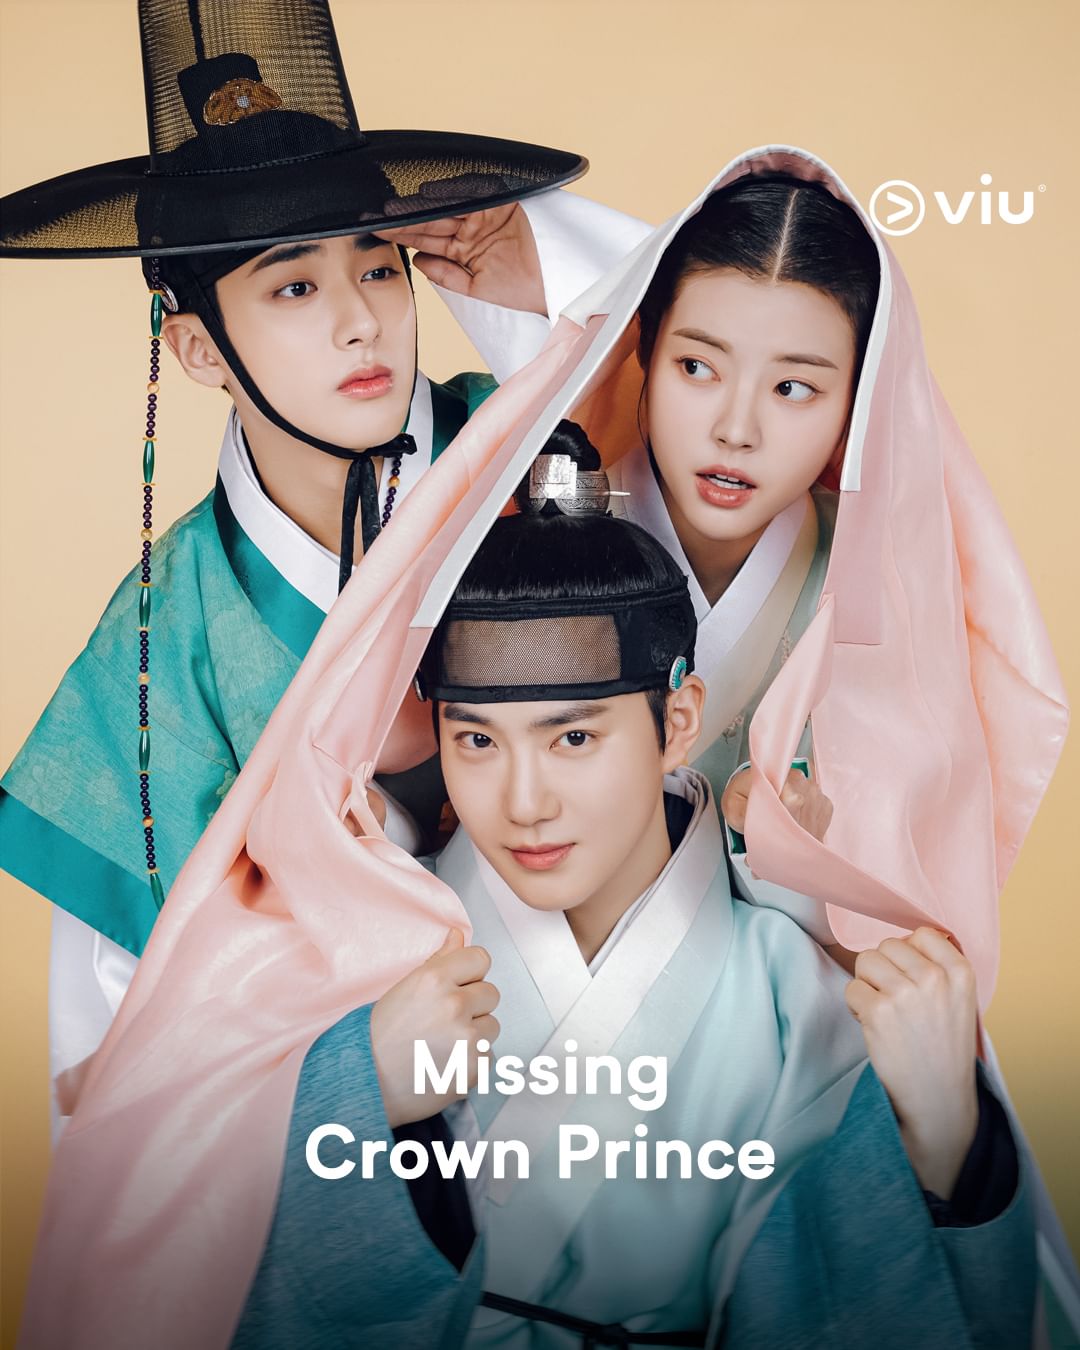 مسلسل ولي العهد المفقود Missing Crown Prince الحلقة 1